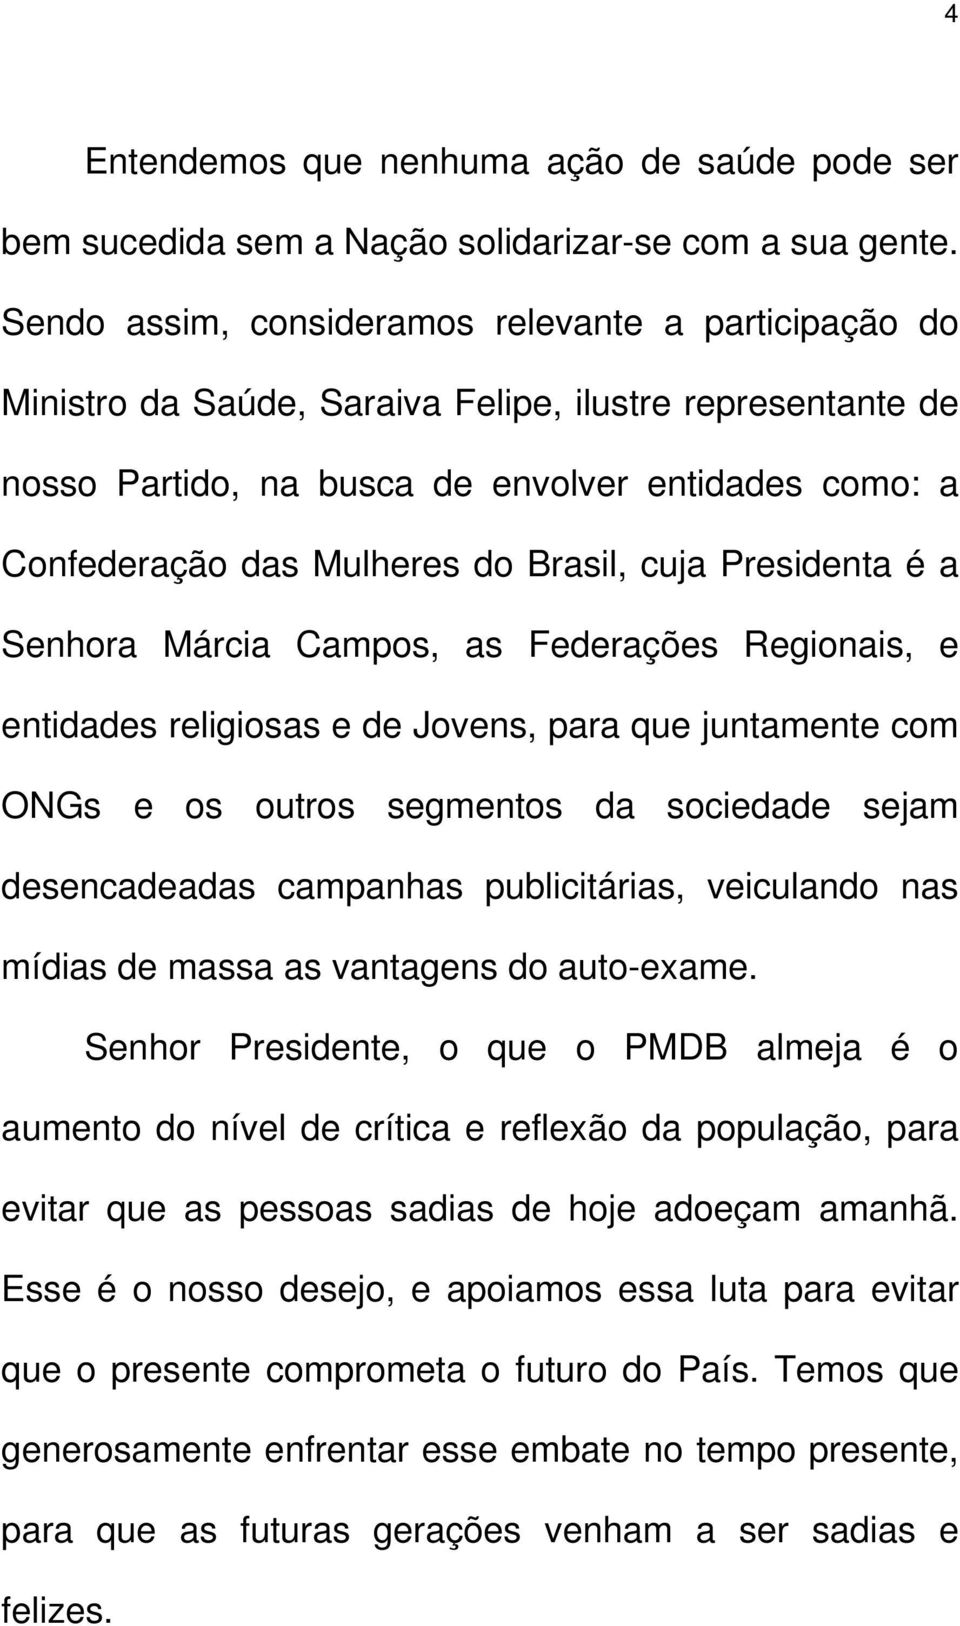 Brasil, cuja Presidenta é a Senhora Márcia Campos, as Federações Regionais, e entidades religiosas e de Jovens, para que juntamente com ONGs e os outros segmentos da sociedade sejam desencadeadas